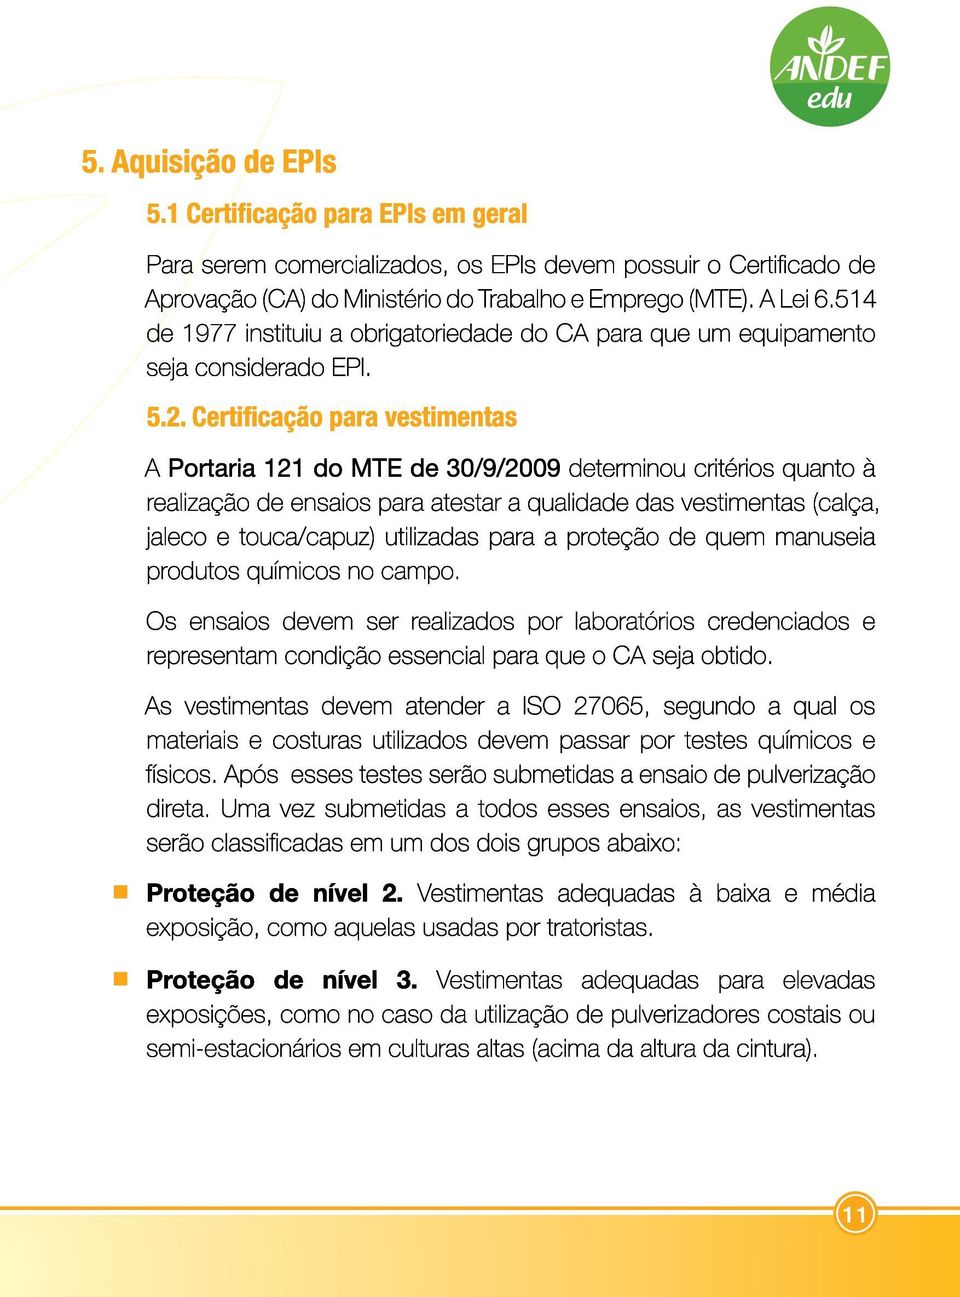 Certificação para vestimentas A Portaria 121 do MTE de 30/9/2009 determinou critérios quanto à realização de ensaios para atestar a qualidade das vestimentas (calça, jaleco e touca/capuz) utilizadas